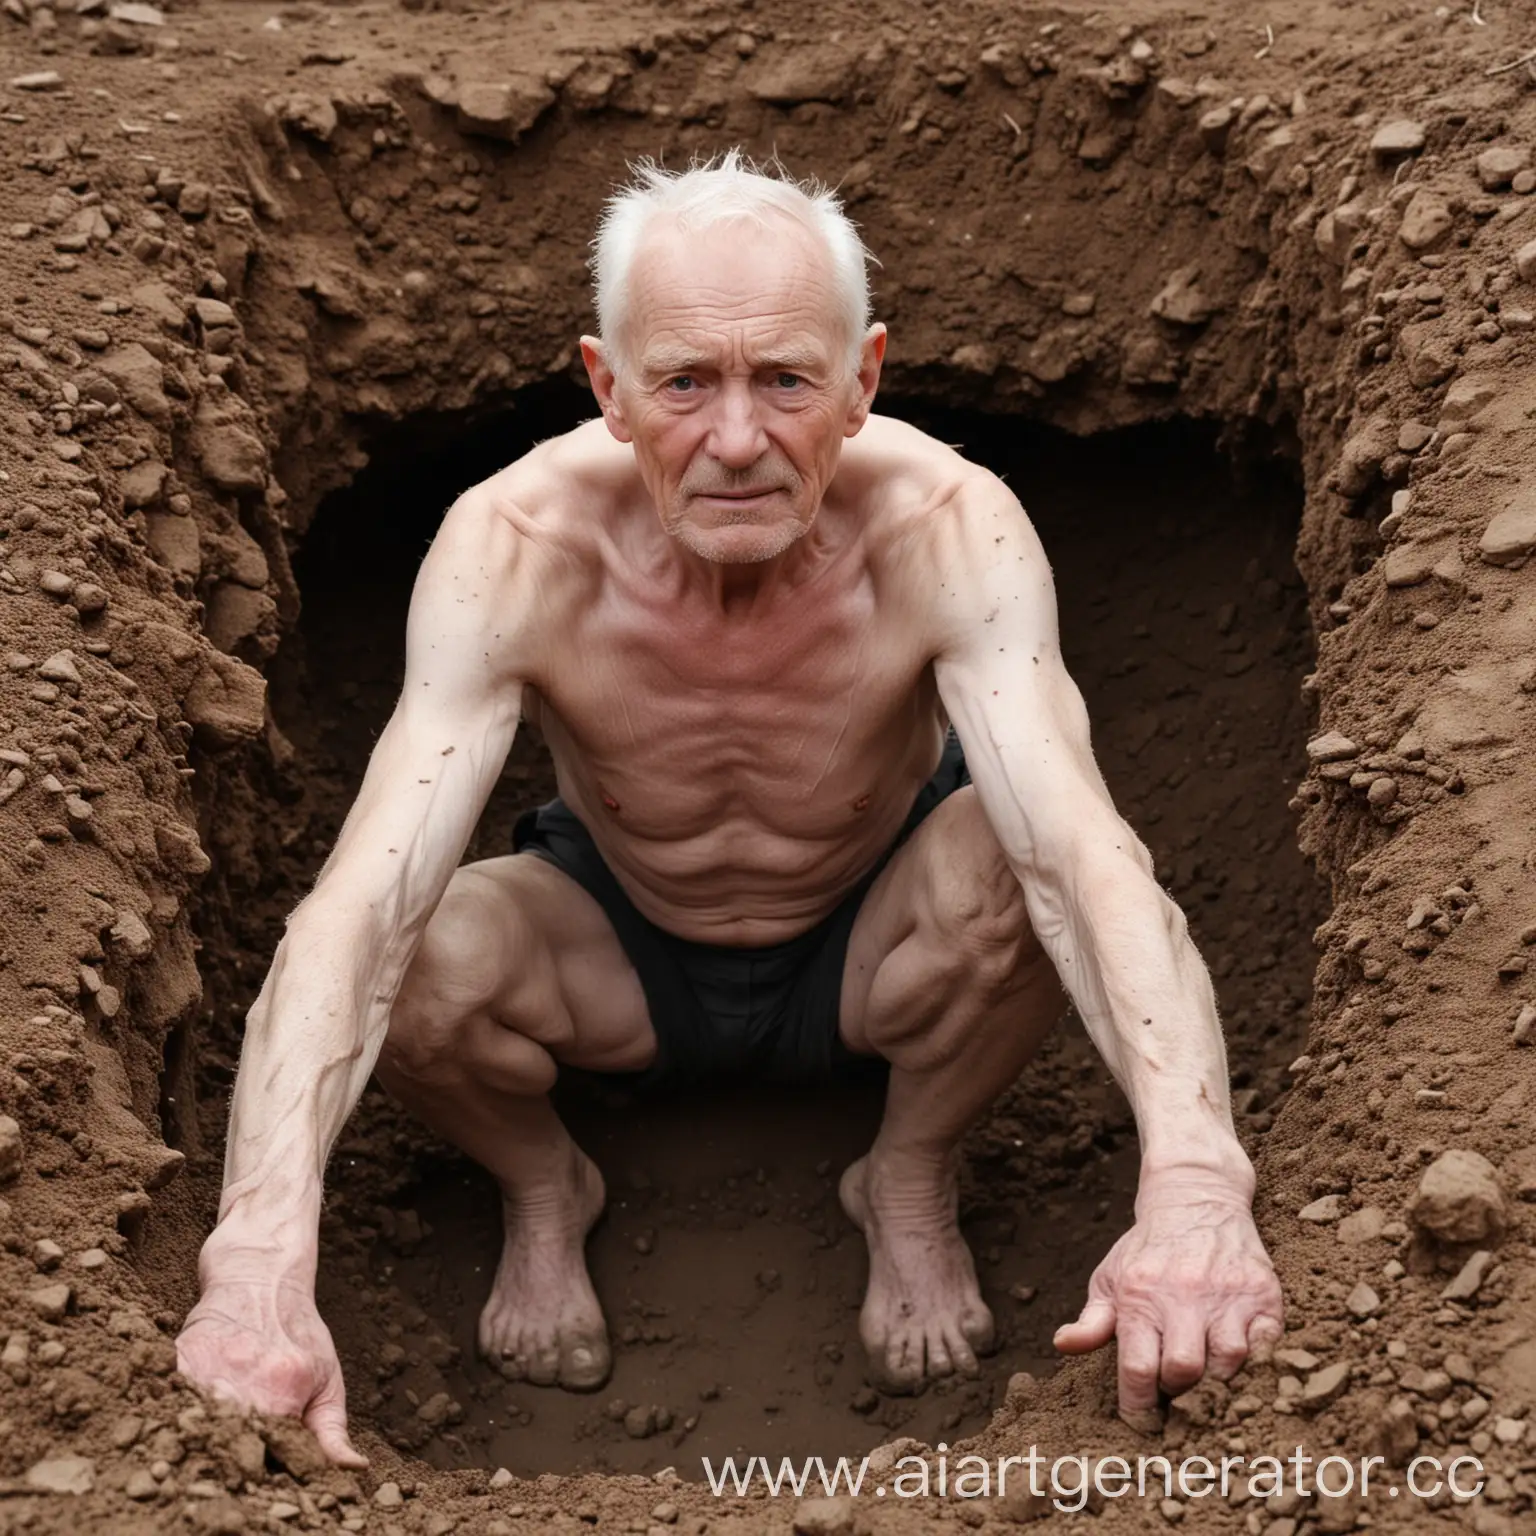 Очень бледный, старческого возраста мужчина, вылезающий из под земли. Можно увидеть морщинестые брови и хорошие мускулы